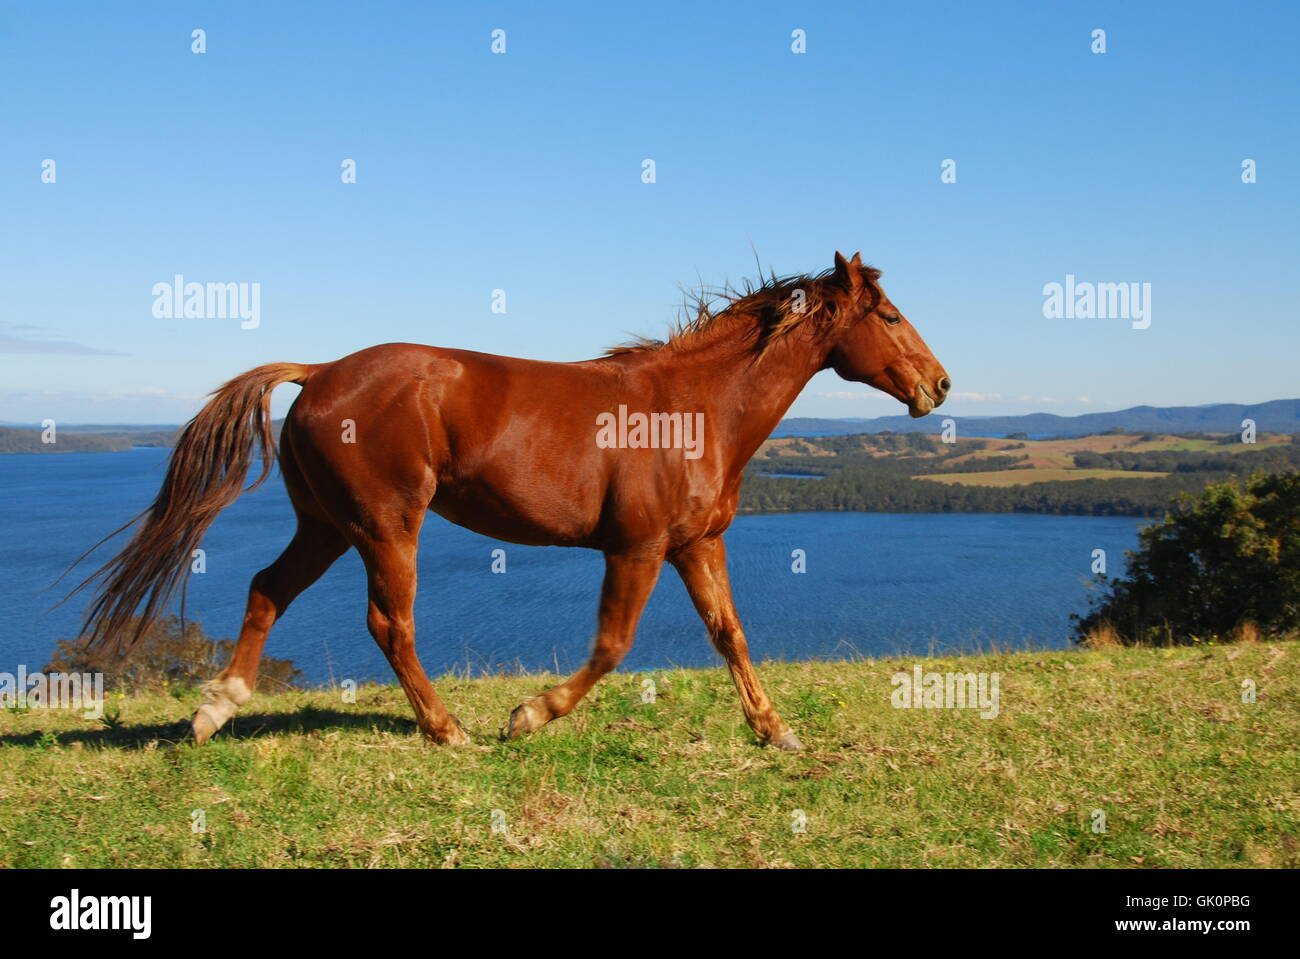 horse longing freedom Stock Photo